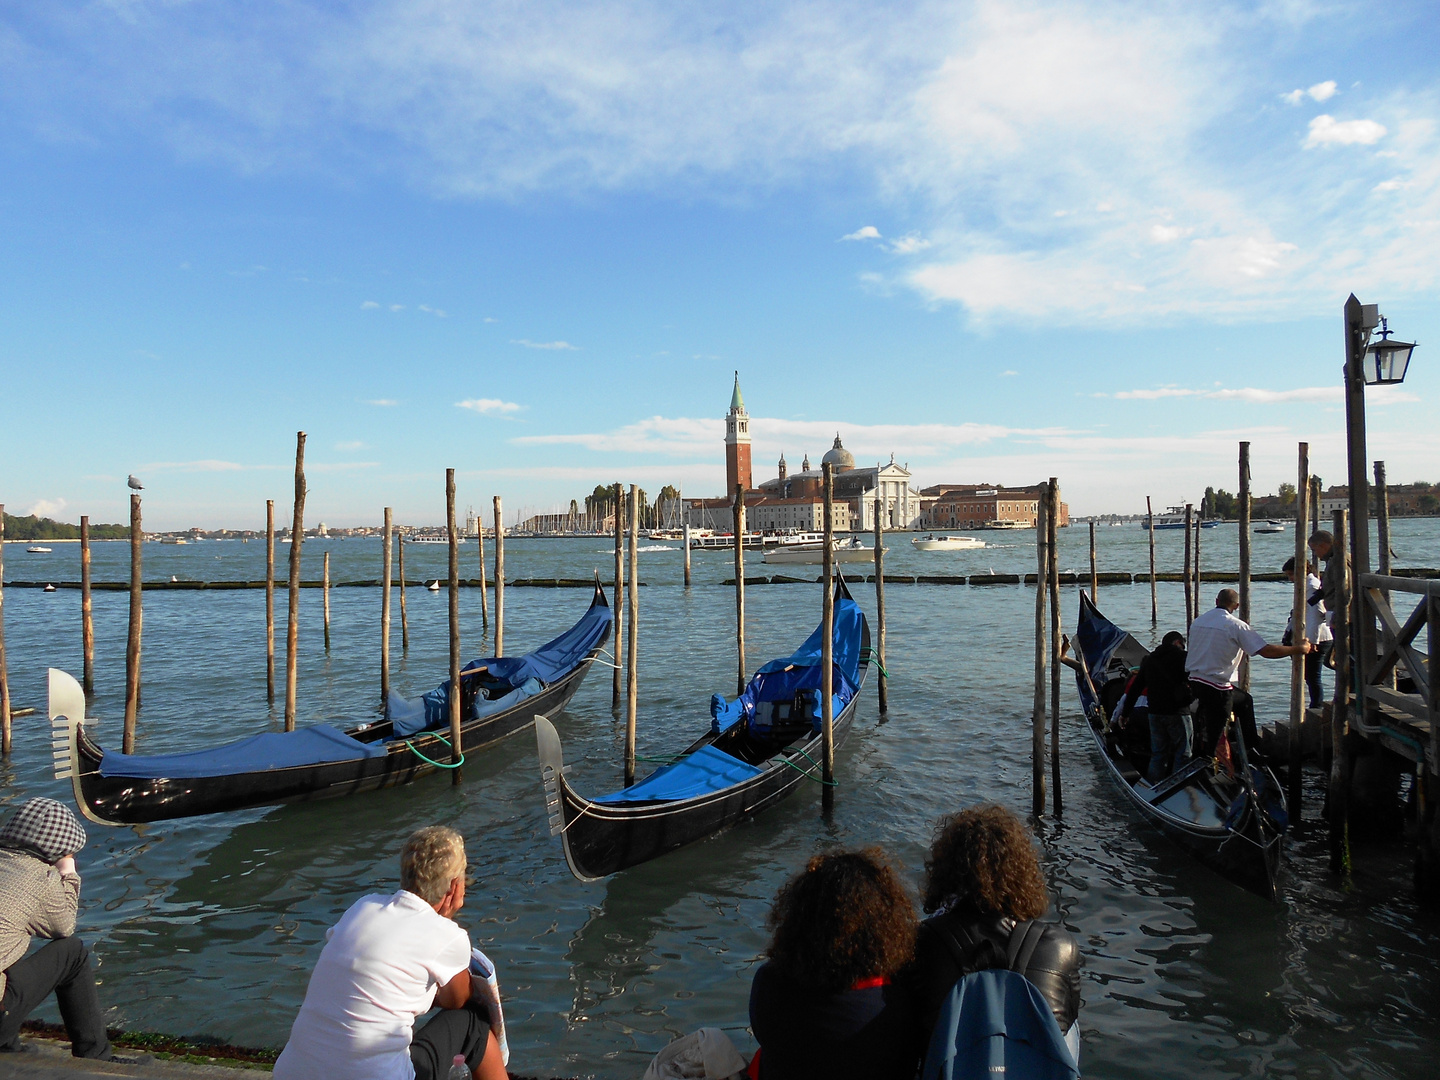 I Love Venice!!!